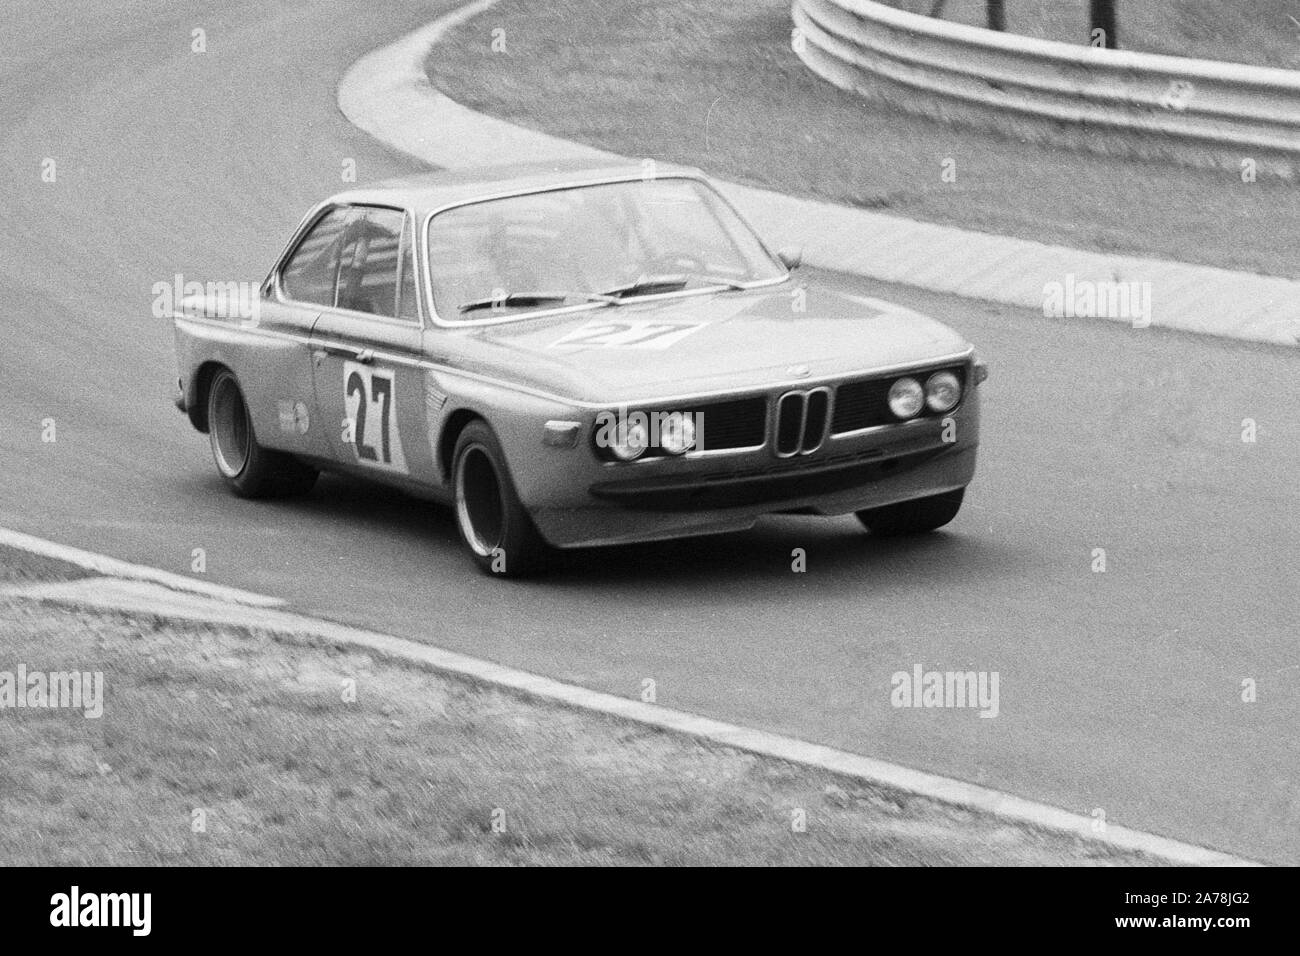 BMW 3.0 CSL während der 1970er Jahre Tourenwagen Rennen auf dem Nürburgring, Deutschland Stockfoto